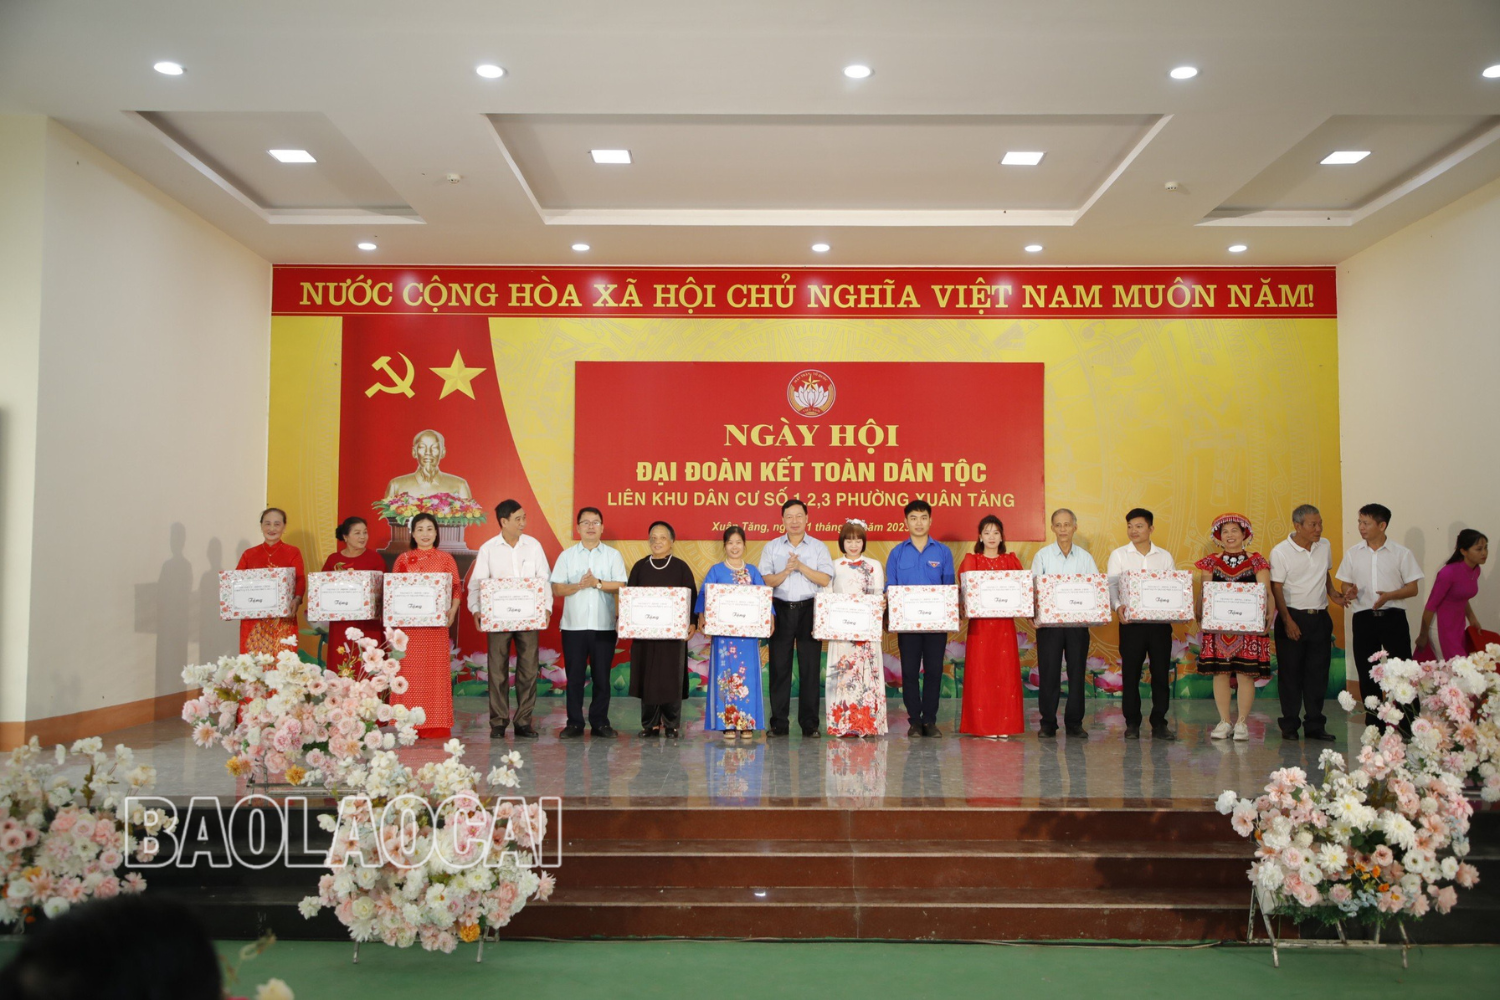 Lãnh đạo Thành ủy Lào Cai tặng quà liên khu dân cư số 1, 2, 3 phường Xuân Tăng nhân Ngày hội Đại đoàn kết toàn dân tộc.